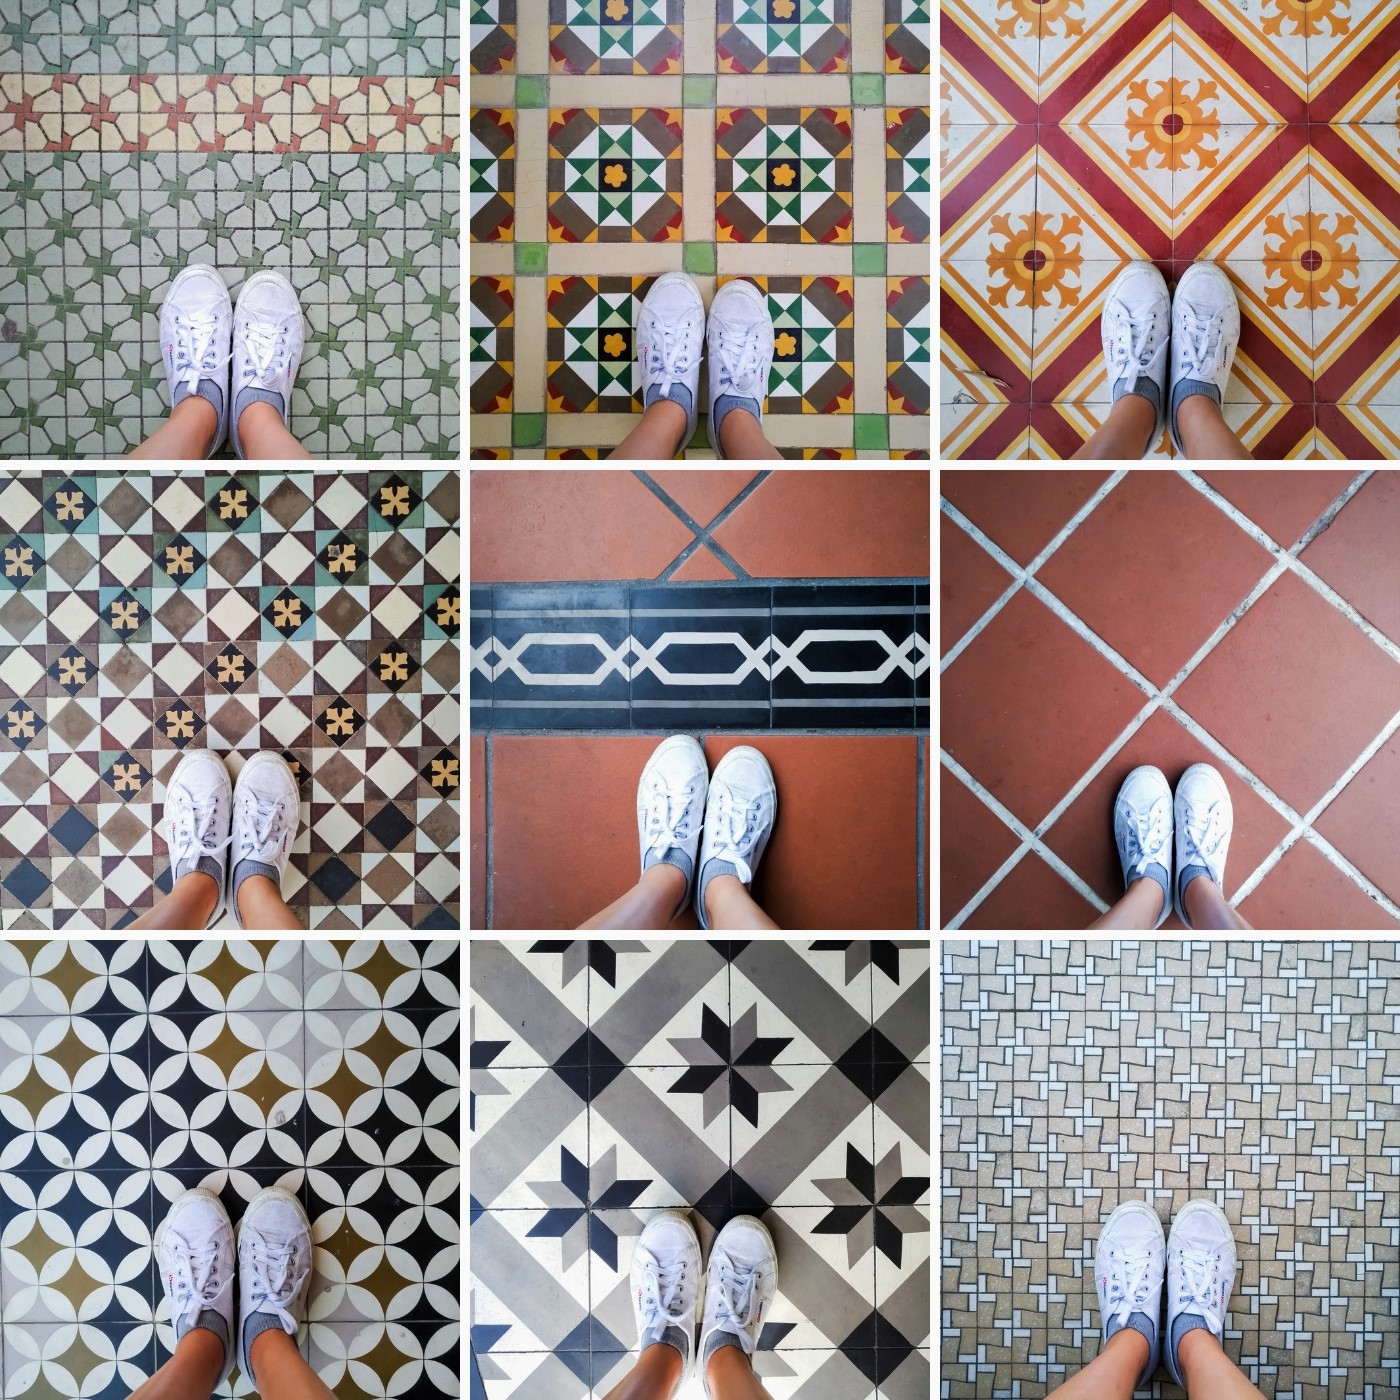 Floor tiles outside heritage buildings.